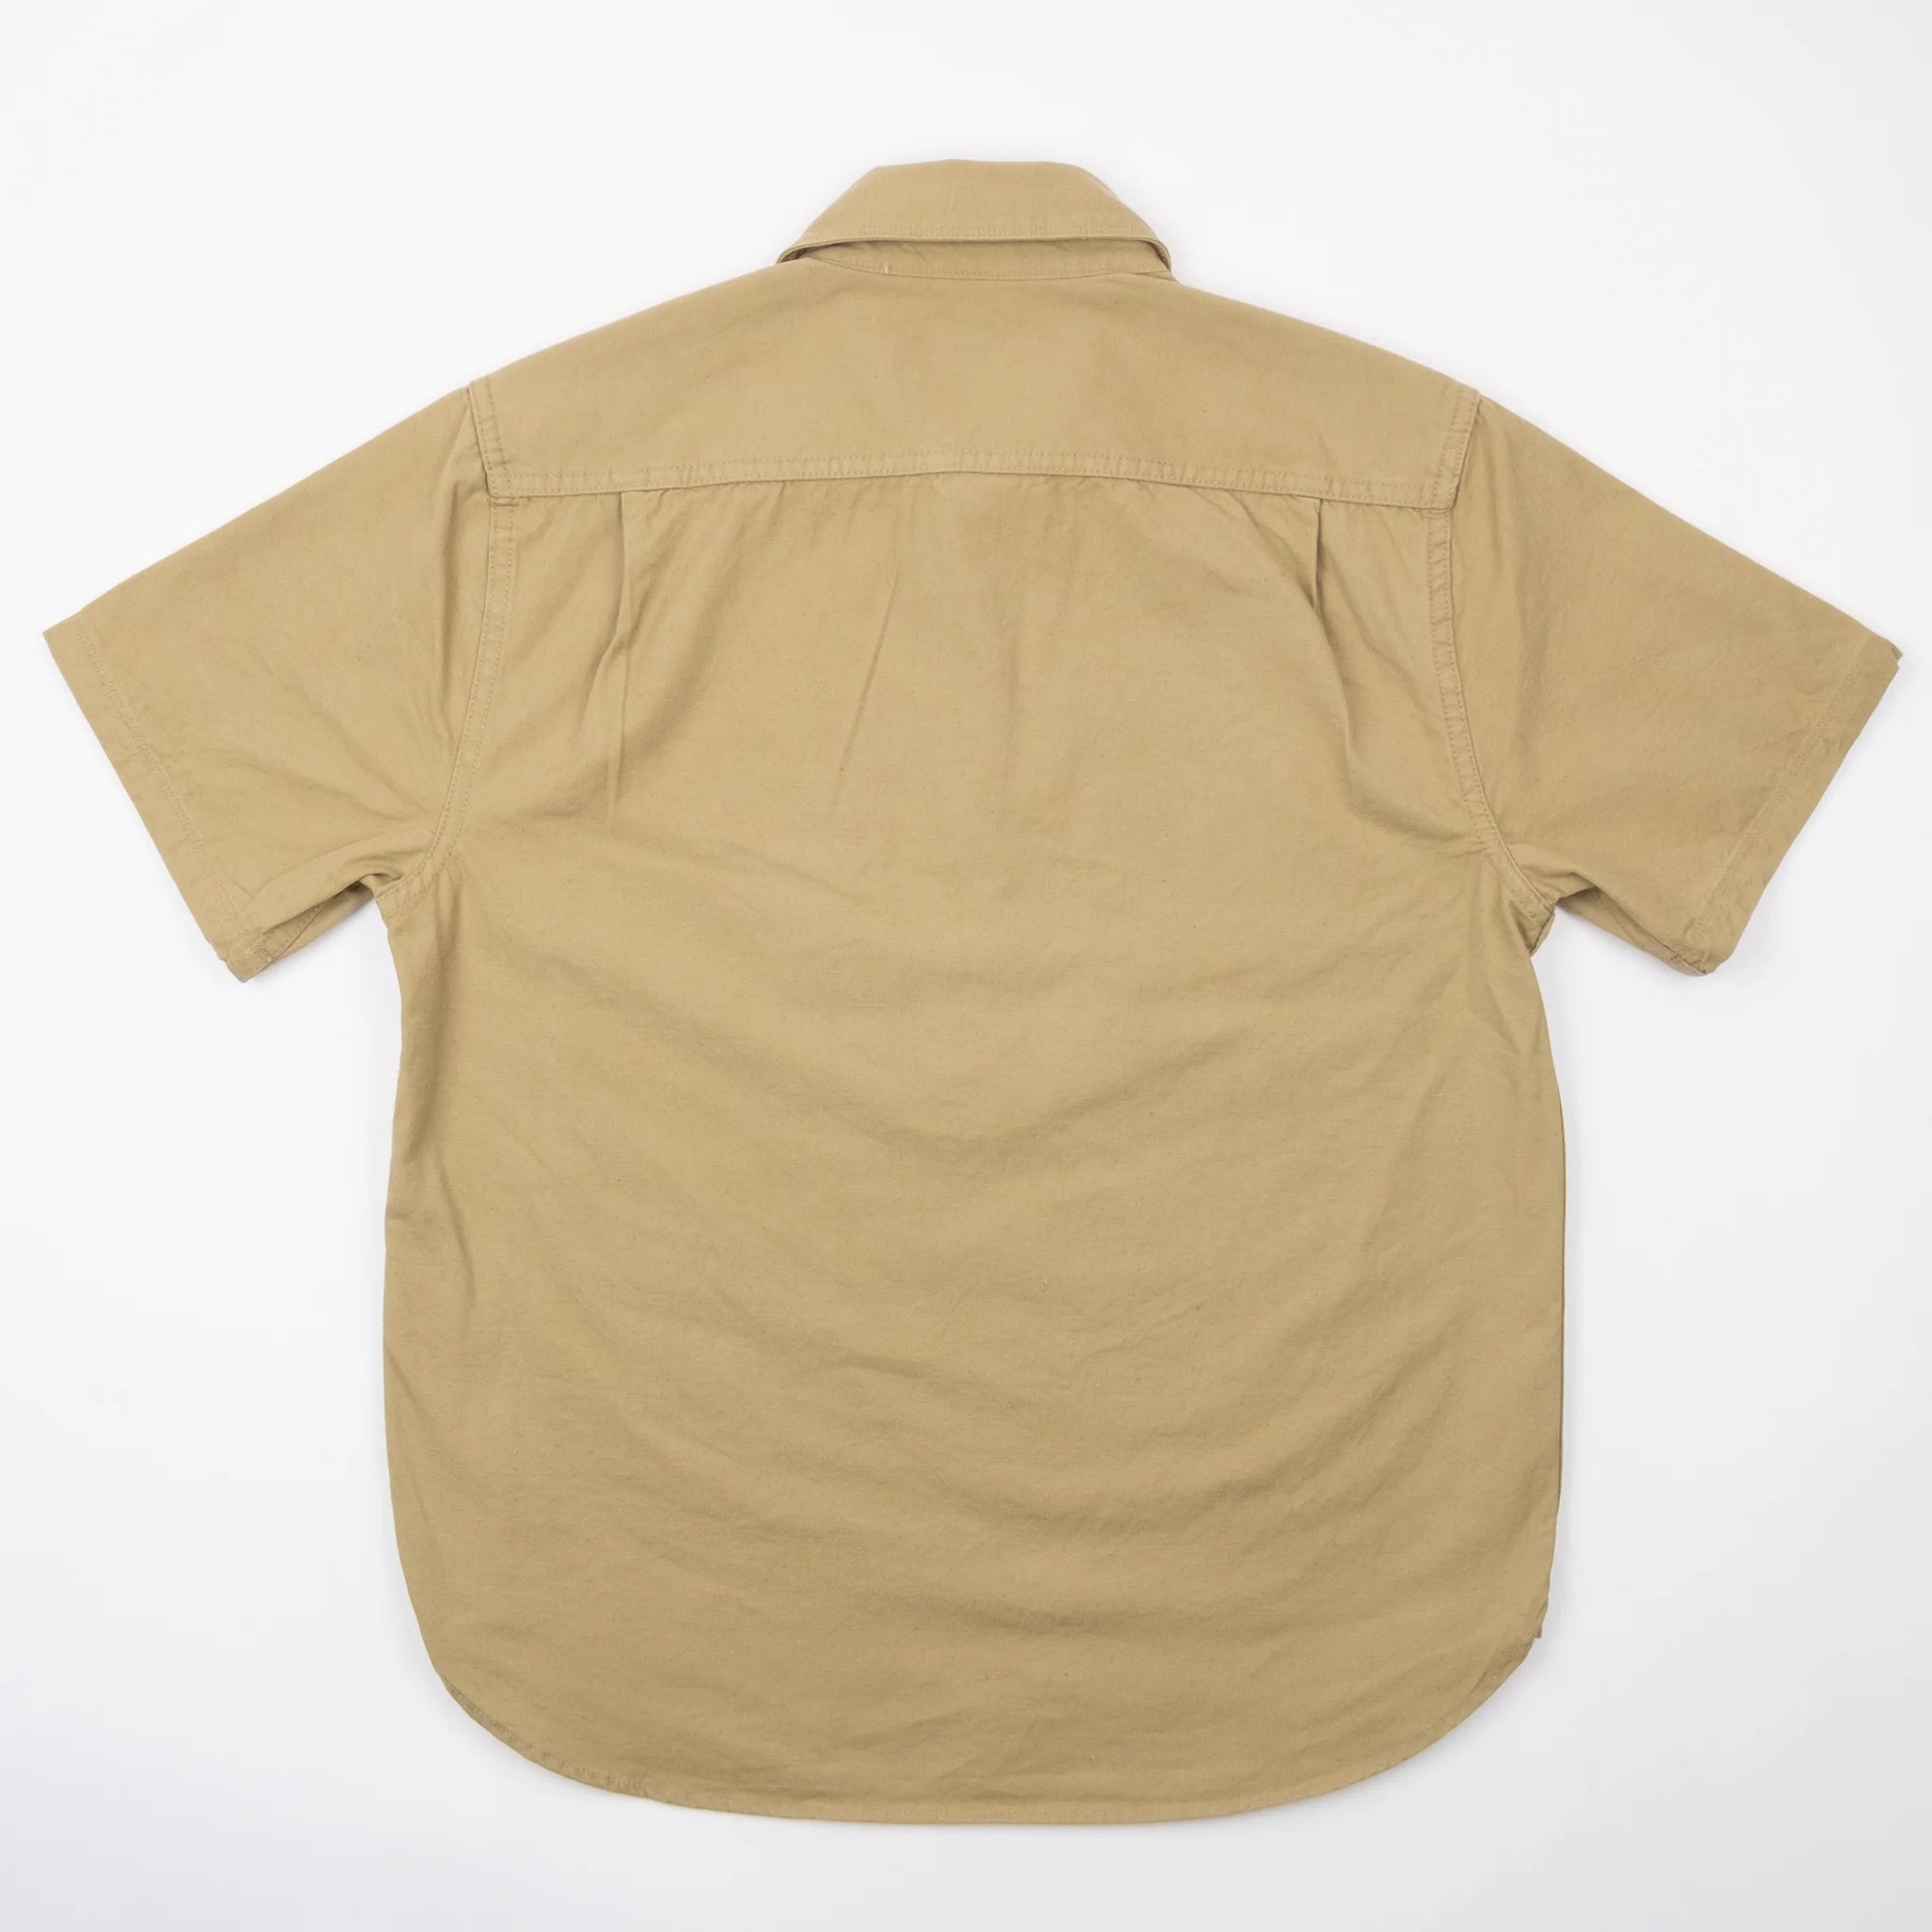 Freenote Cloth Deck Popover - S/S Field Tan